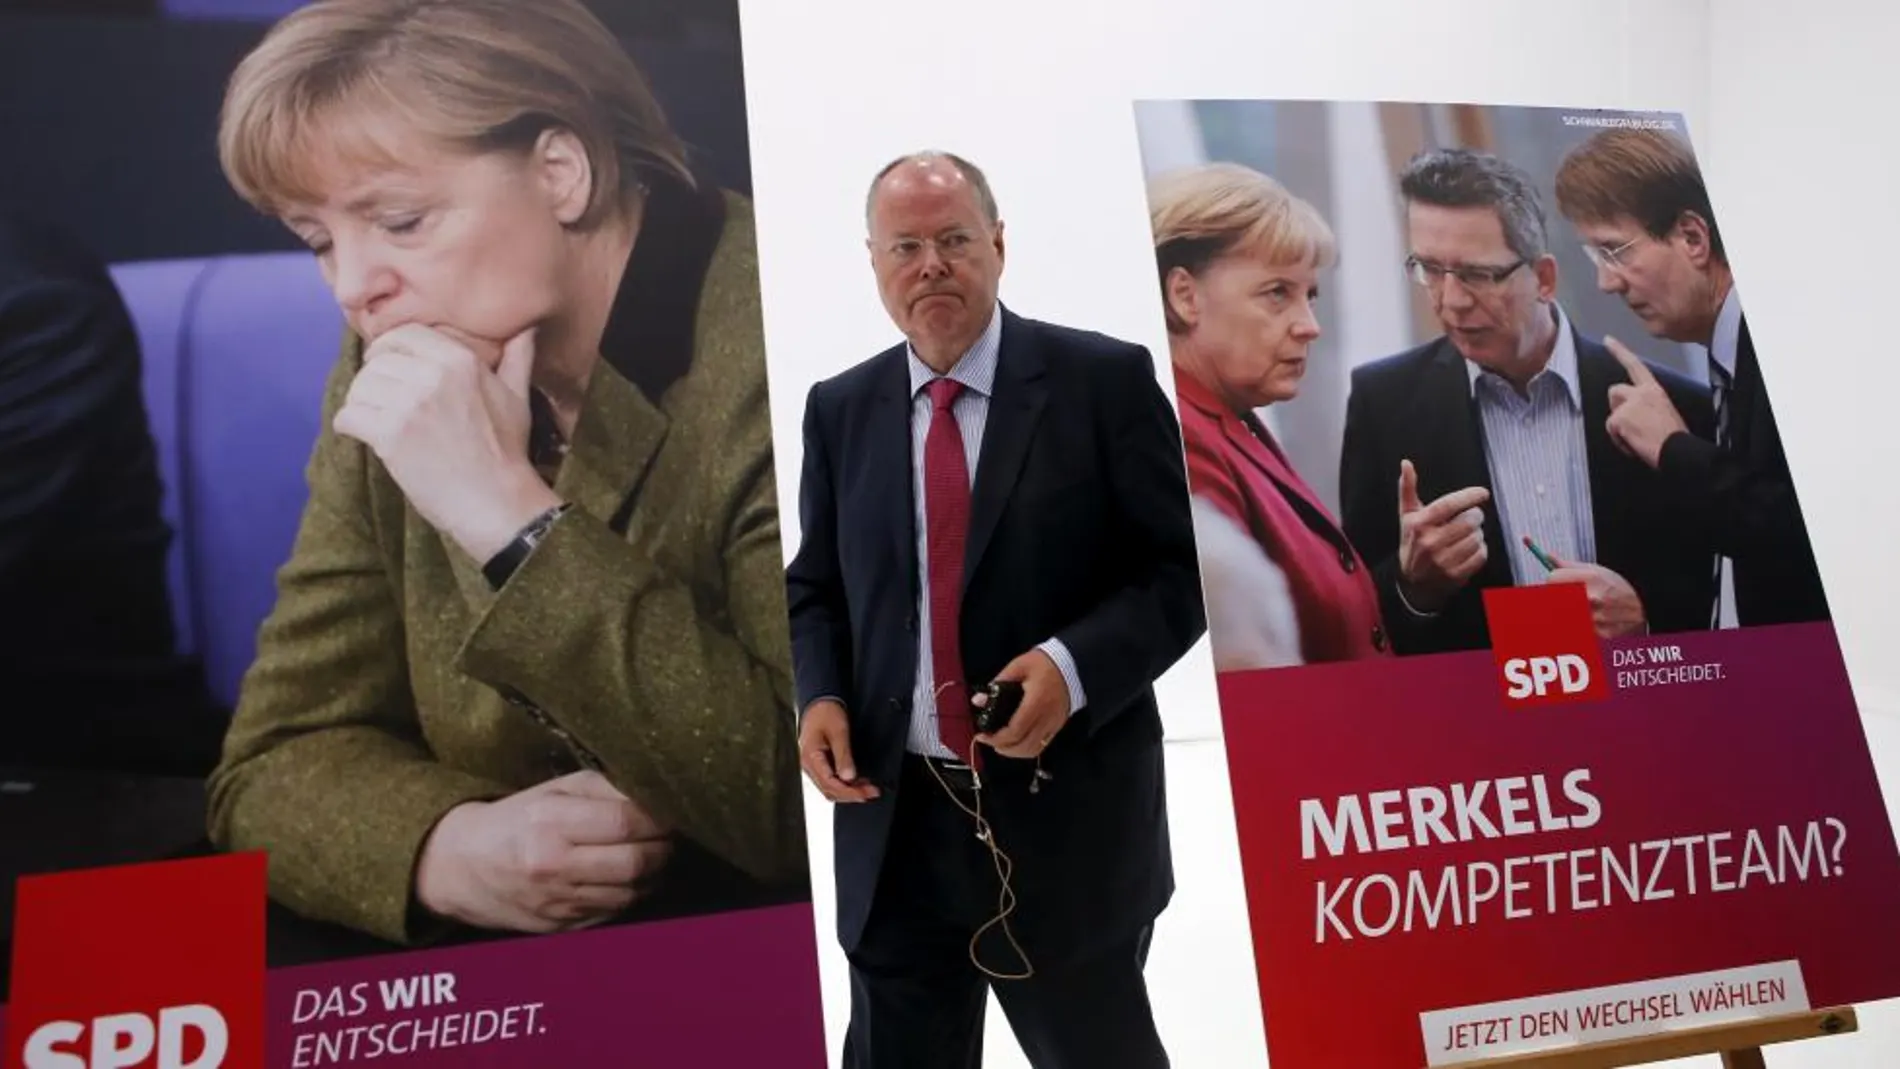 El candidato socialdemócrata a la Cancillería, Peer Steinbrück, presenta, el pasado martes en Berlín, el cartel electoral del partido